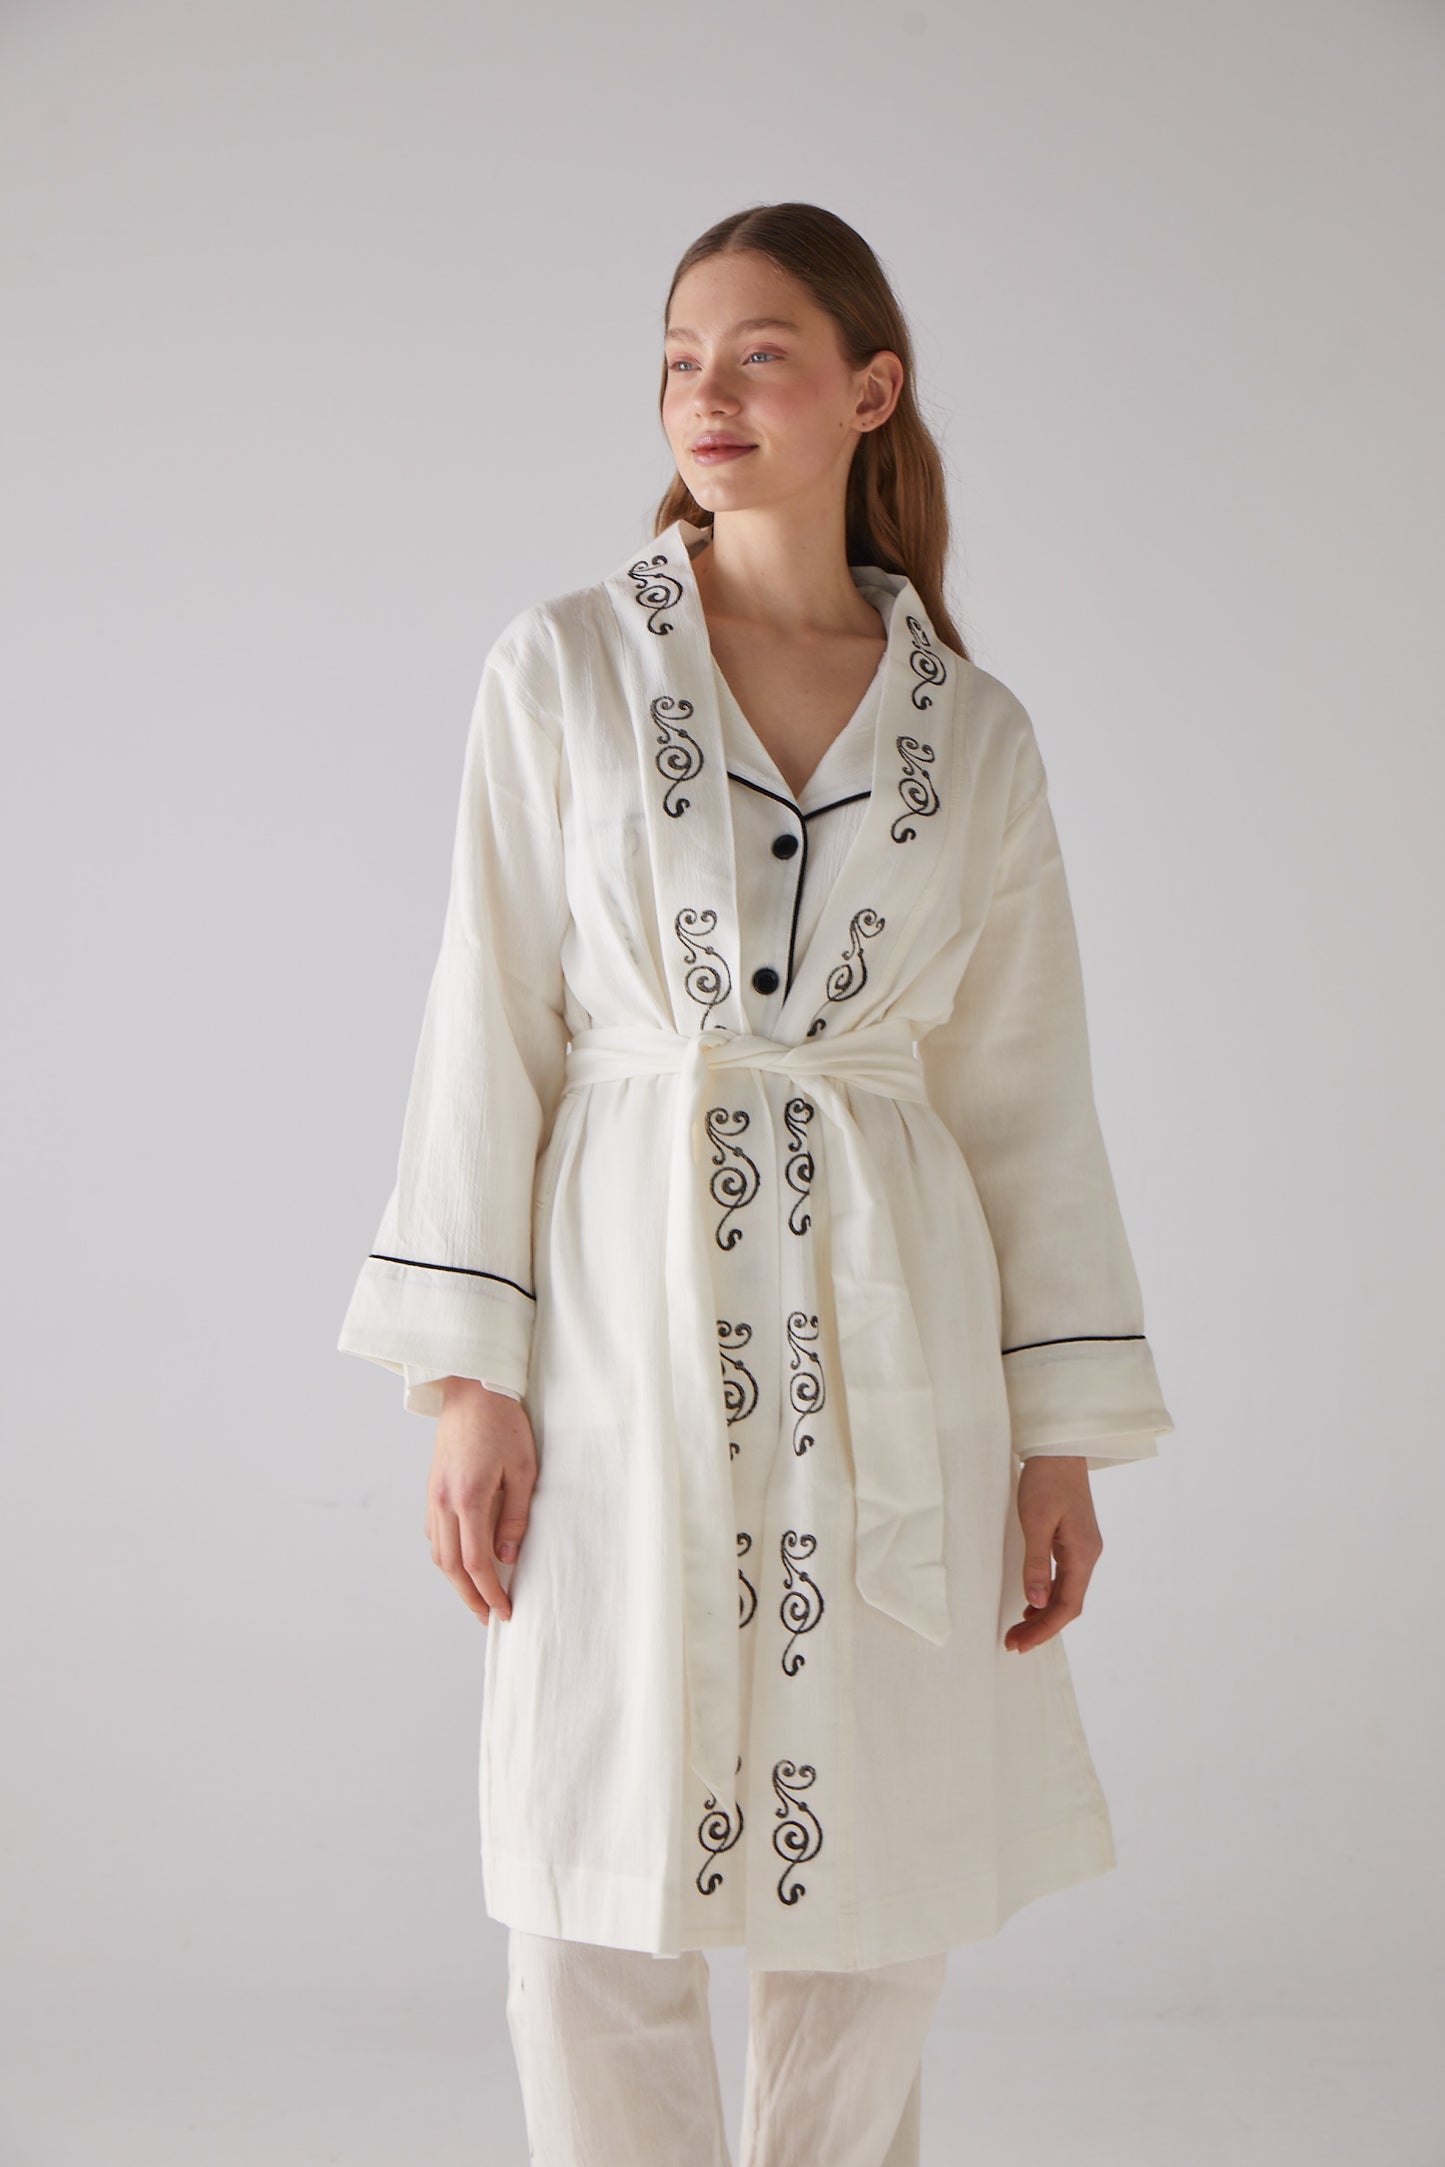 Gravure sur bois à motifs Clef Robe du matin en coton blanc 100 % biologique